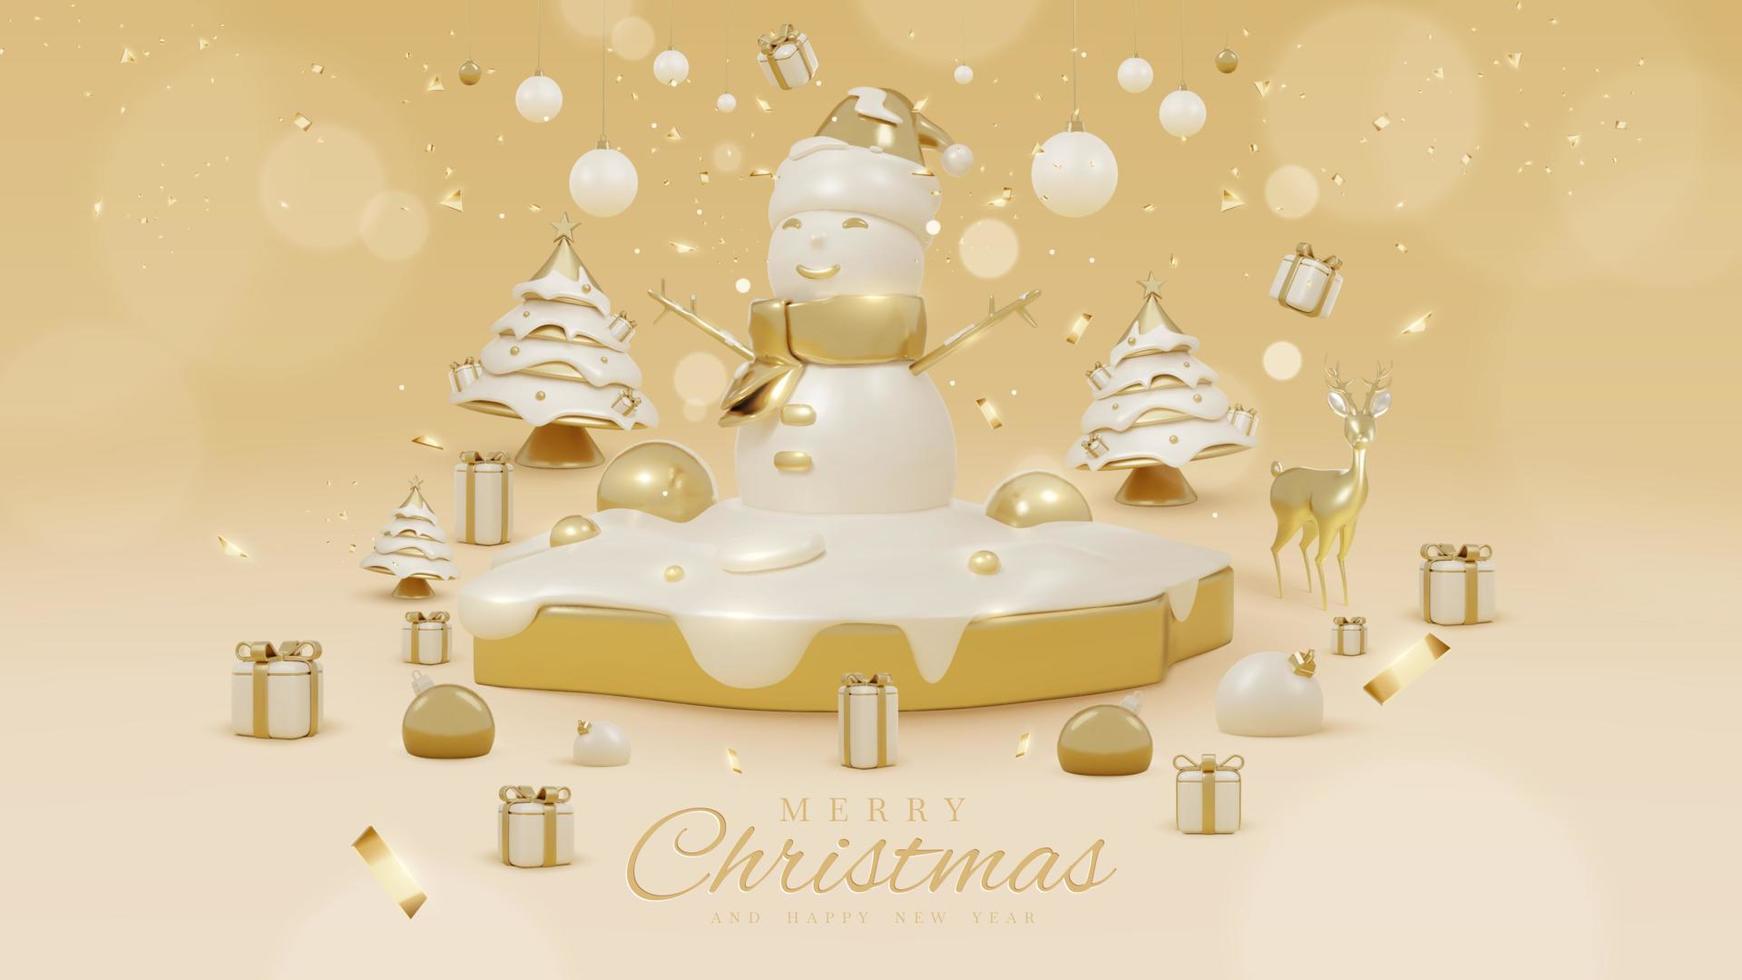 fondo de lujo con muñeco de nieve en podio dorado y elementos de nieve con adornos navideños realistas en 3d y decoraciones de efectos de luz brillante y bokeh. ilustración vectorial vector